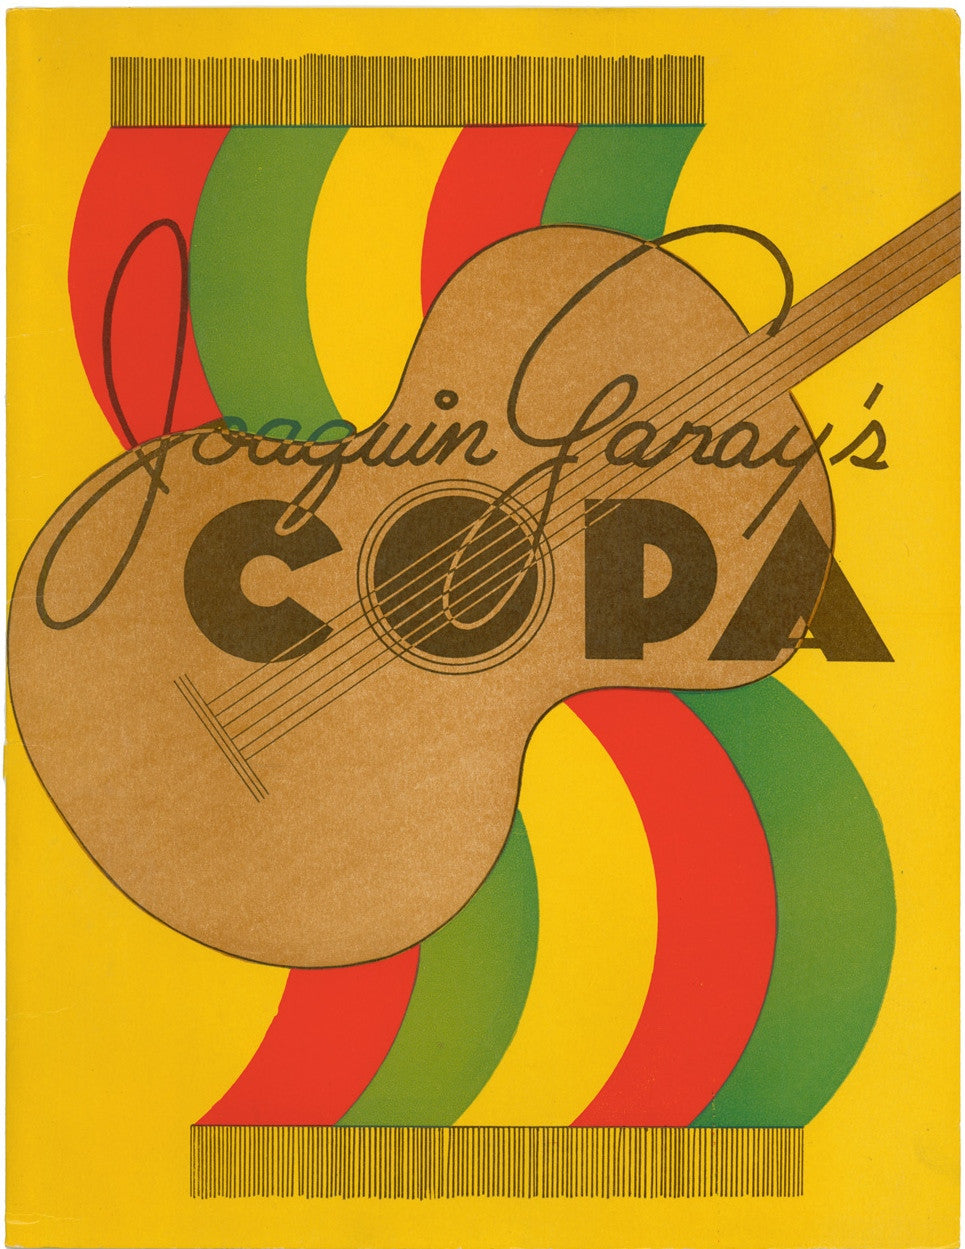 Joaquin Garay's Copa, San Francisco, 1950s Menu Art